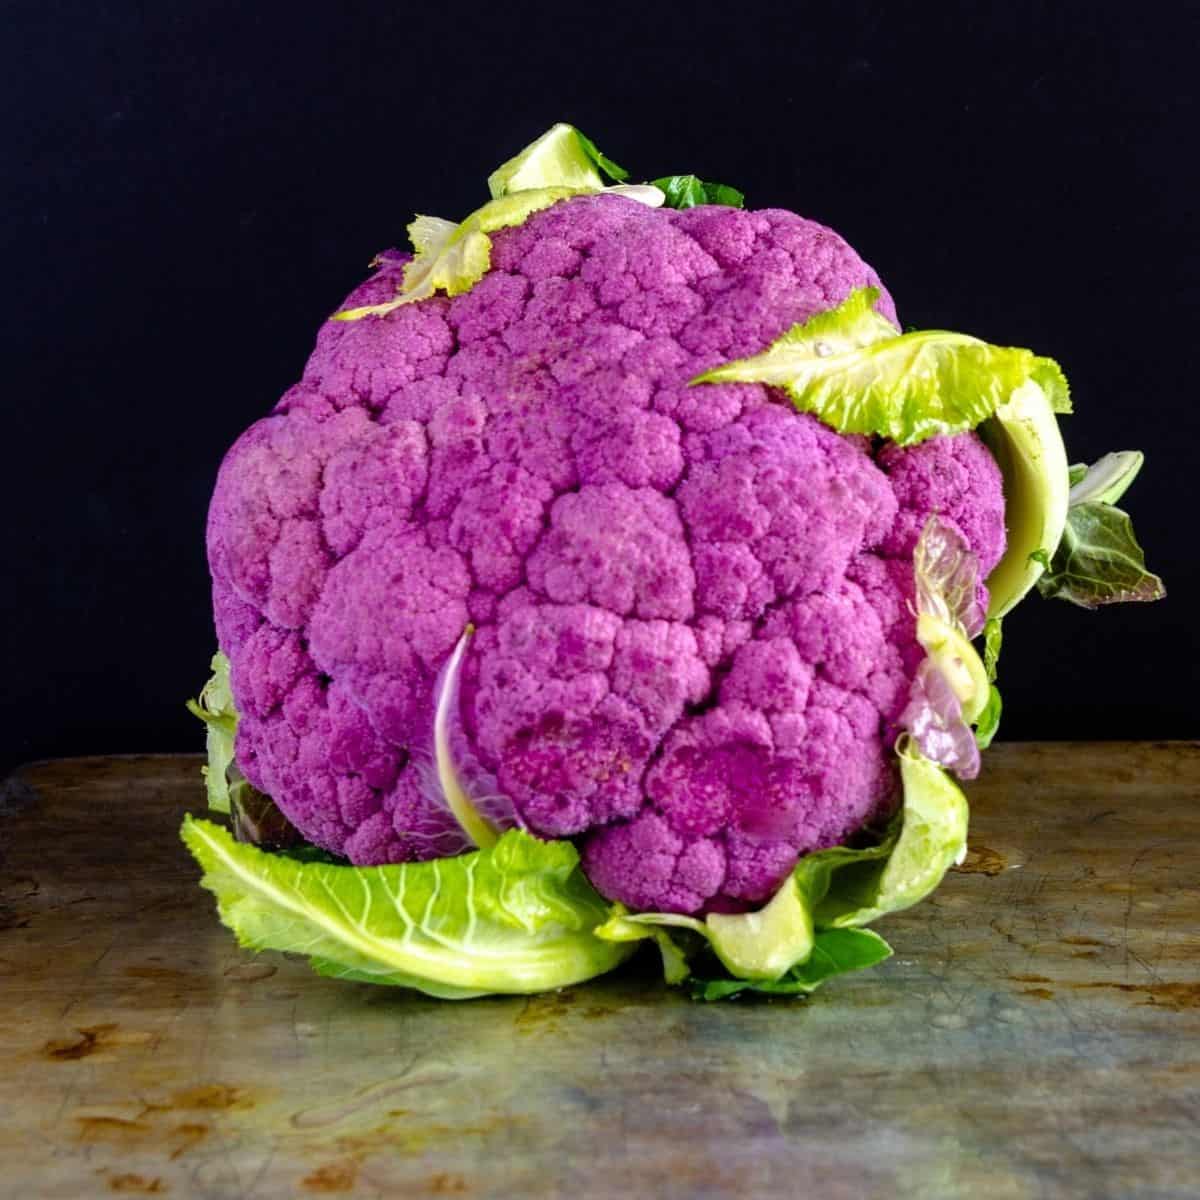 purple cauliflower on polished table